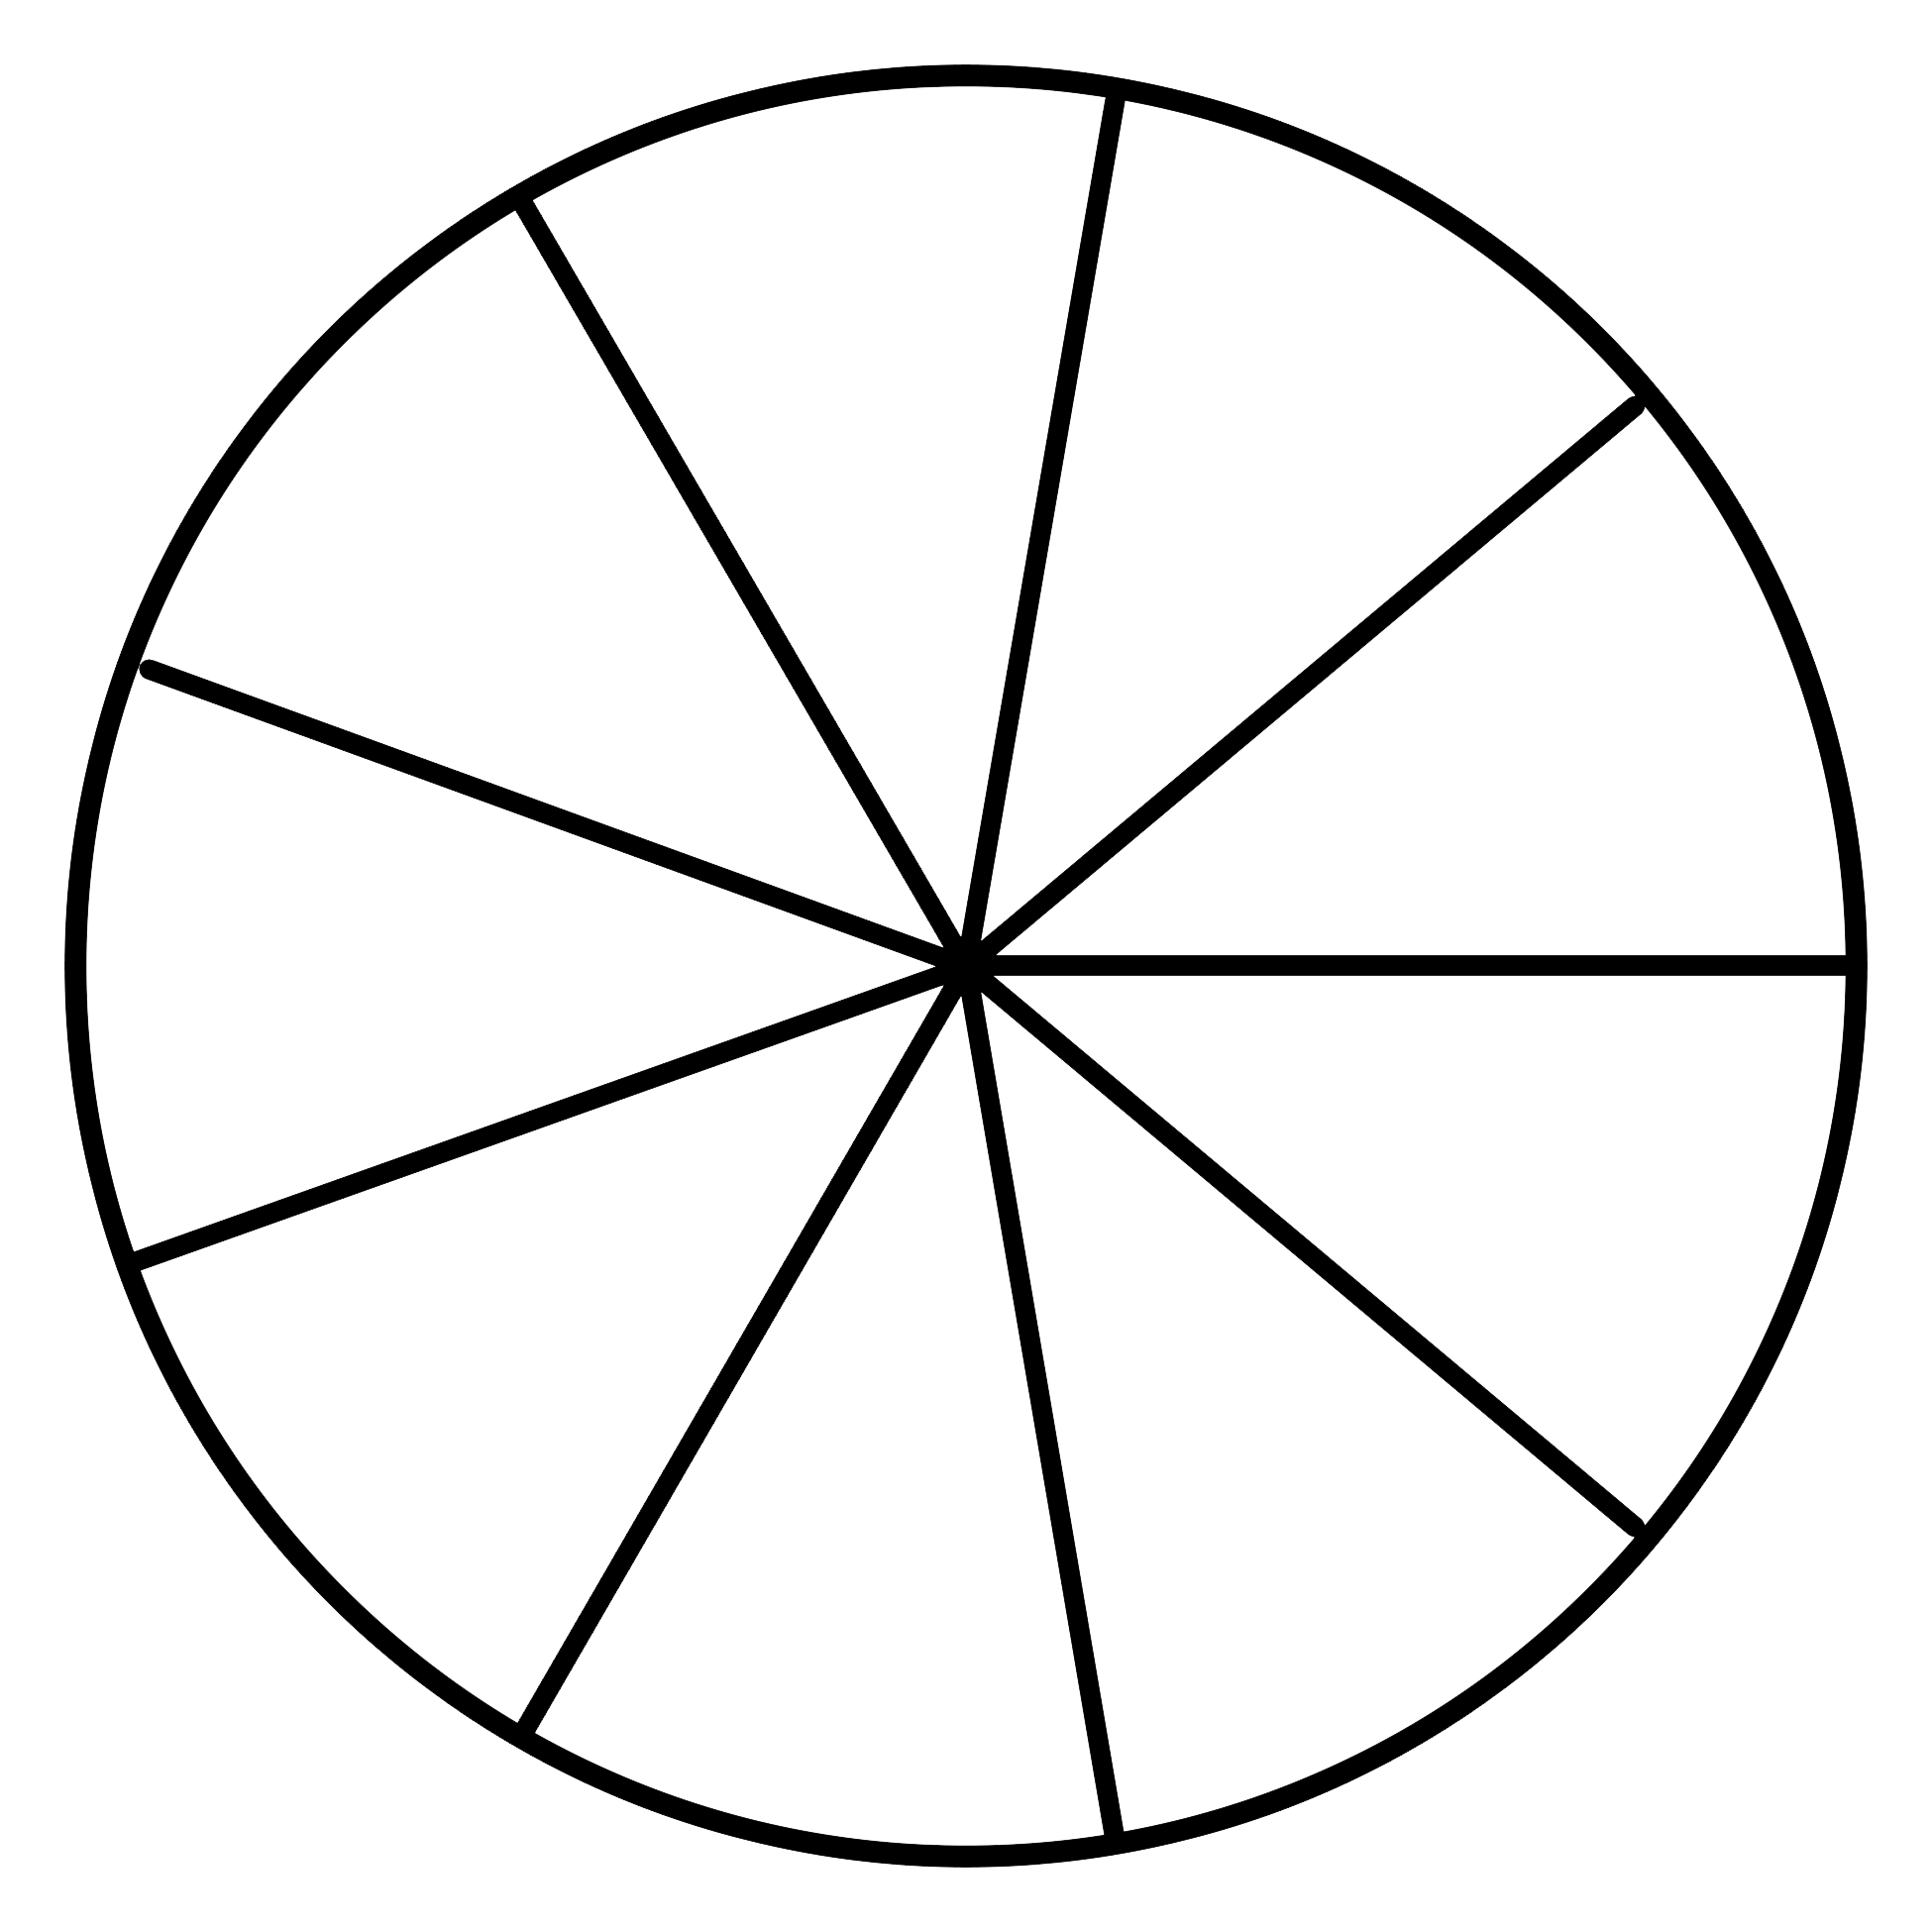 Окружность рисунок. Круги в круге нарисованный. Рисование кругами. Схематичные изображения круг в круге.